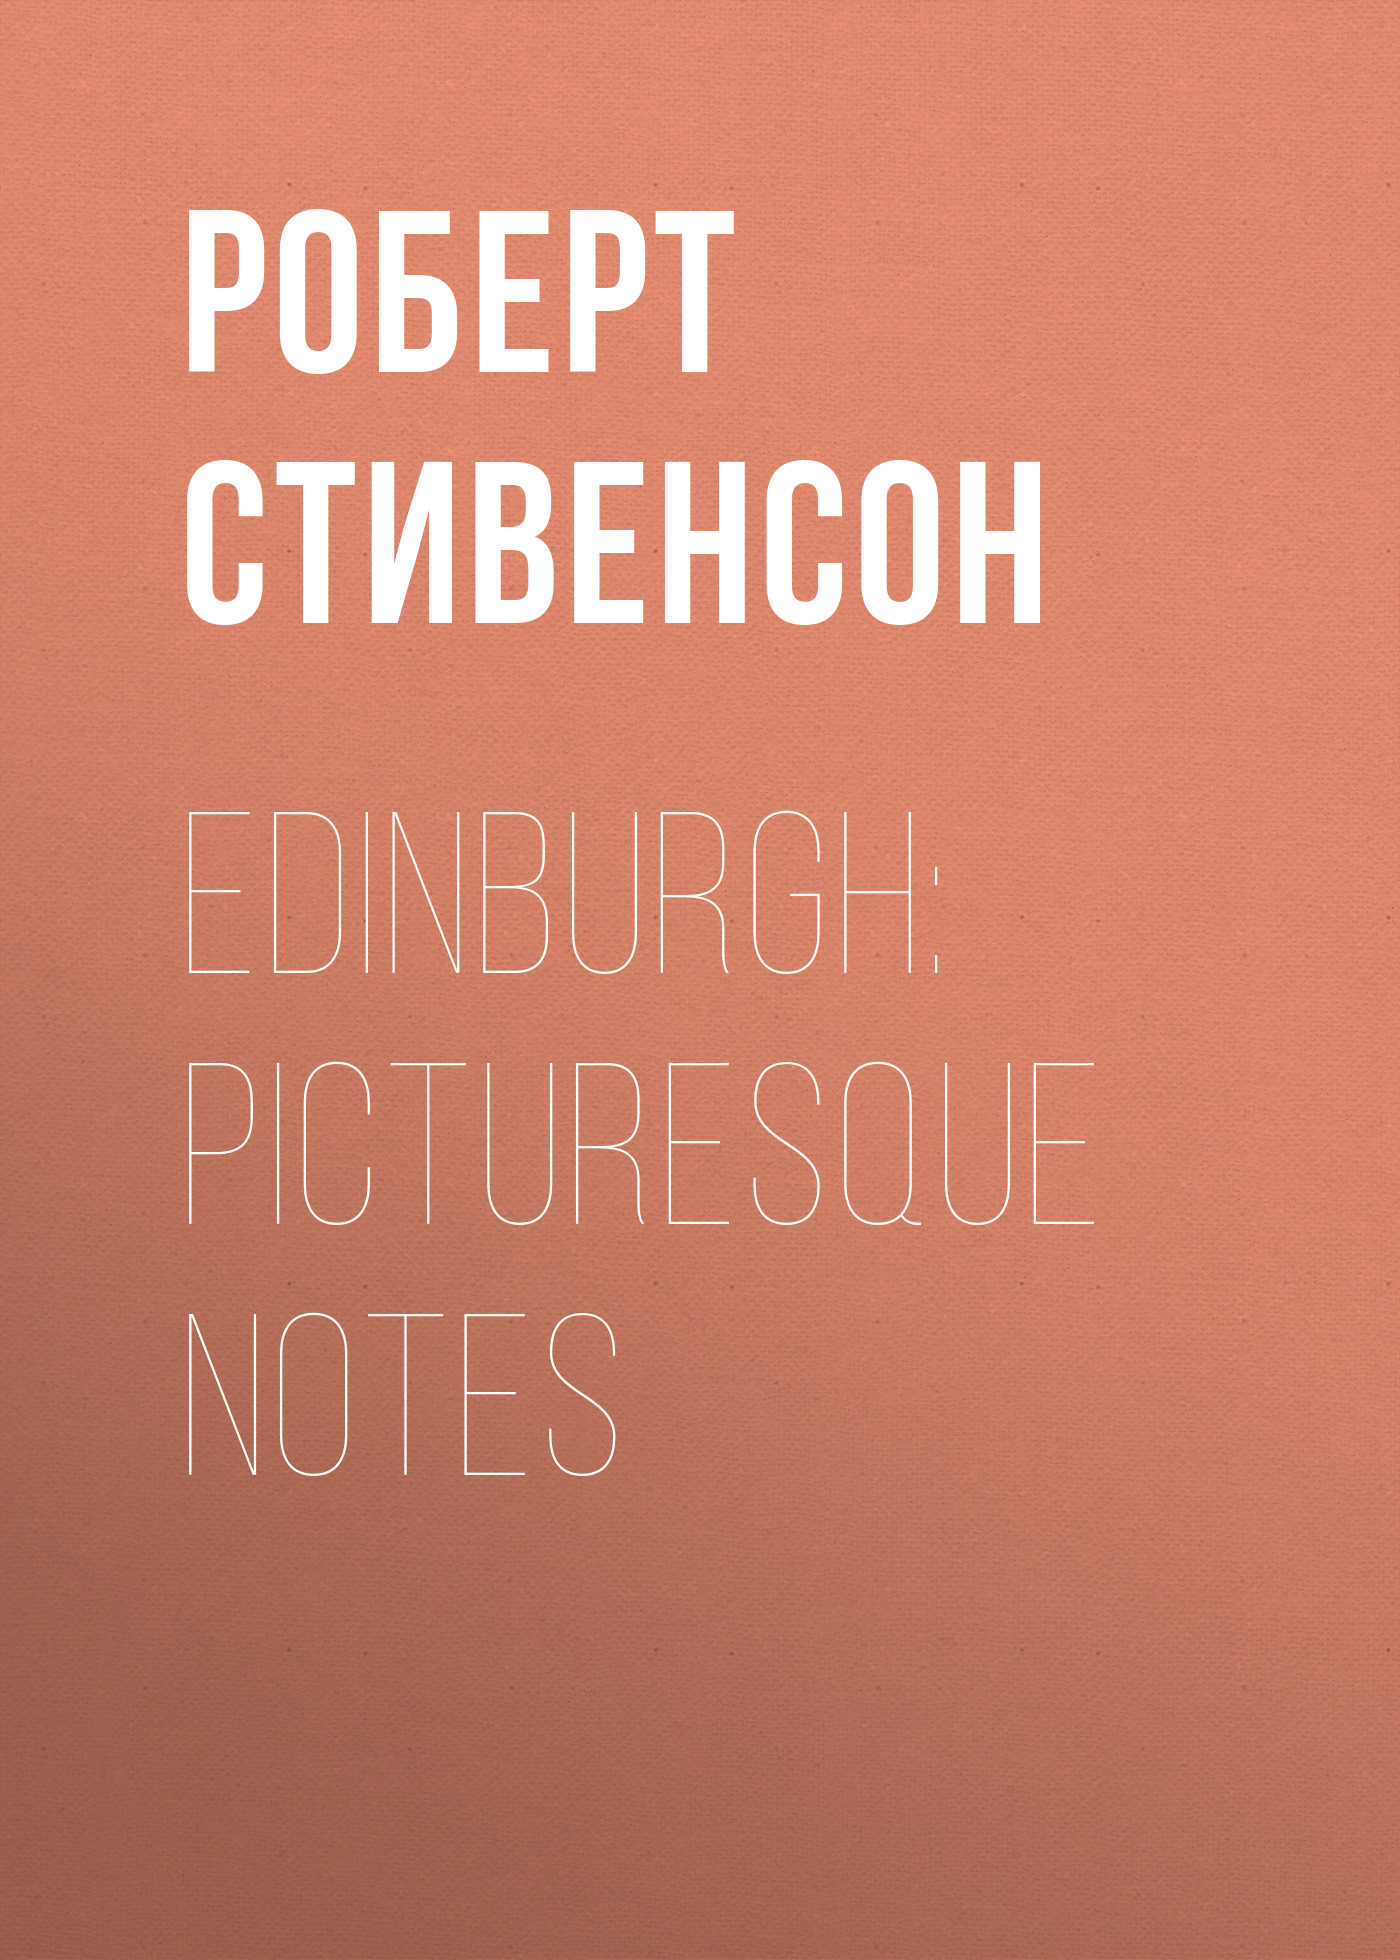 Книга Edinburgh: Picturesque Notes  из серии , созданная Роберт Стивенсон, может относится к жанру Литература 19 века, Культурология, Зарубежная старинная литература, Книги о Путешествиях. Стоимость электронной книги Edinburgh: Picturesque Notes  с идентификатором 25475807 составляет 0 руб.